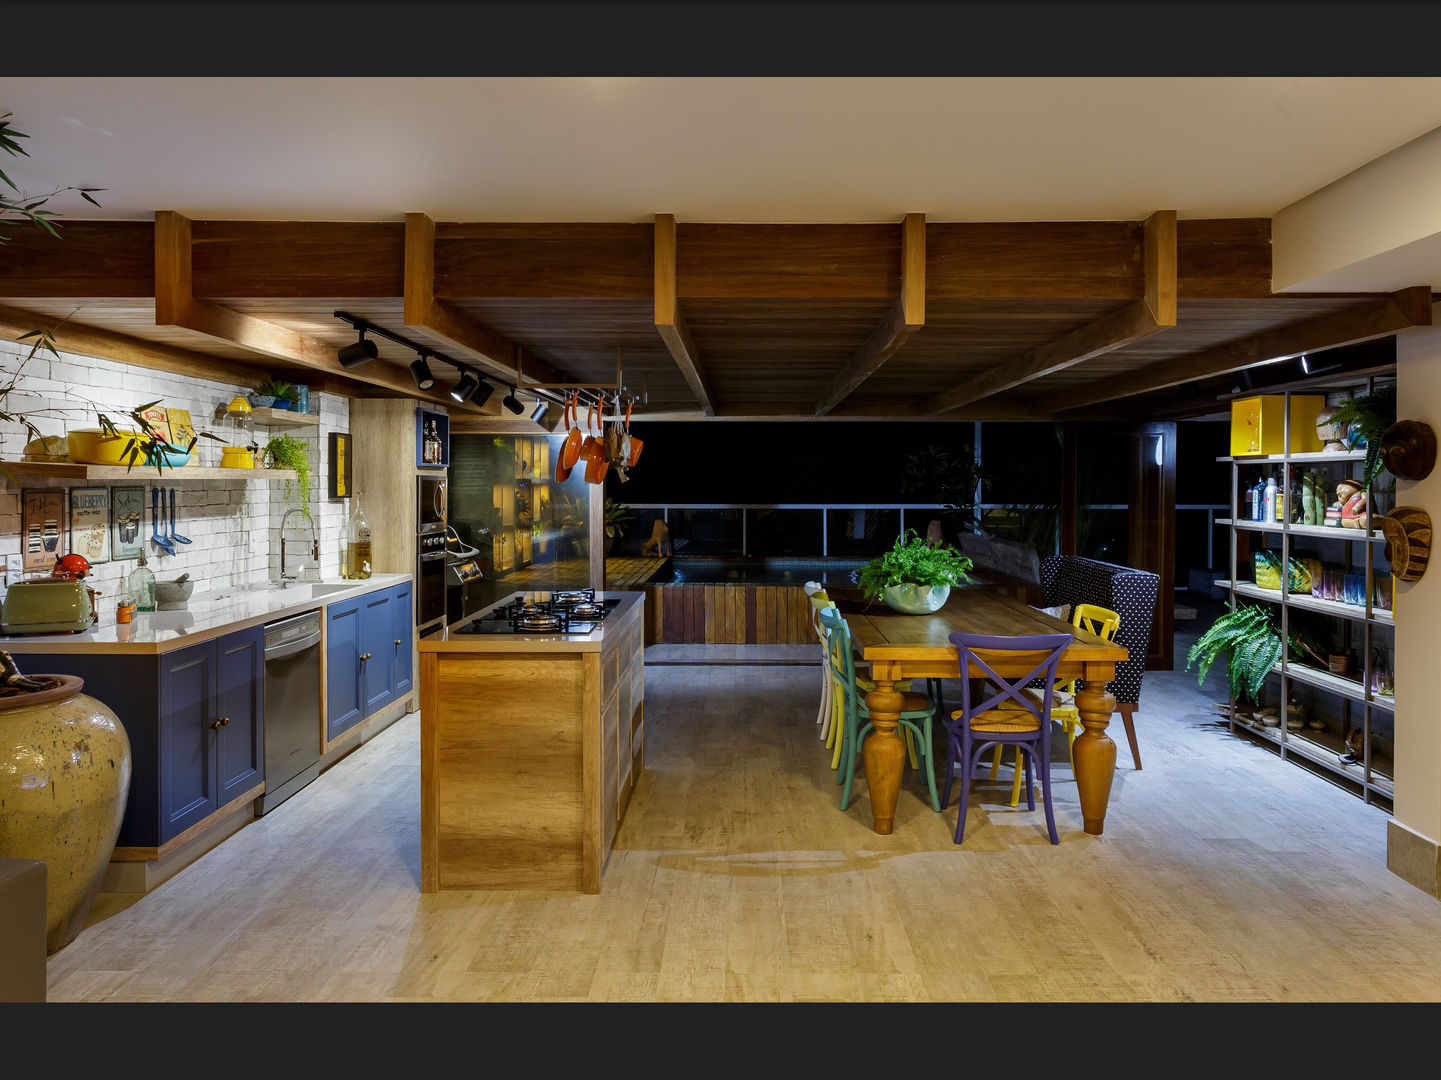 Área Gourmet homify Cozinhas tropicais forro de madeira,mesa de madeira,Cozinha em ilha,estante,cadeiras coloridas,tijolo aparente,área gourmet,nichos